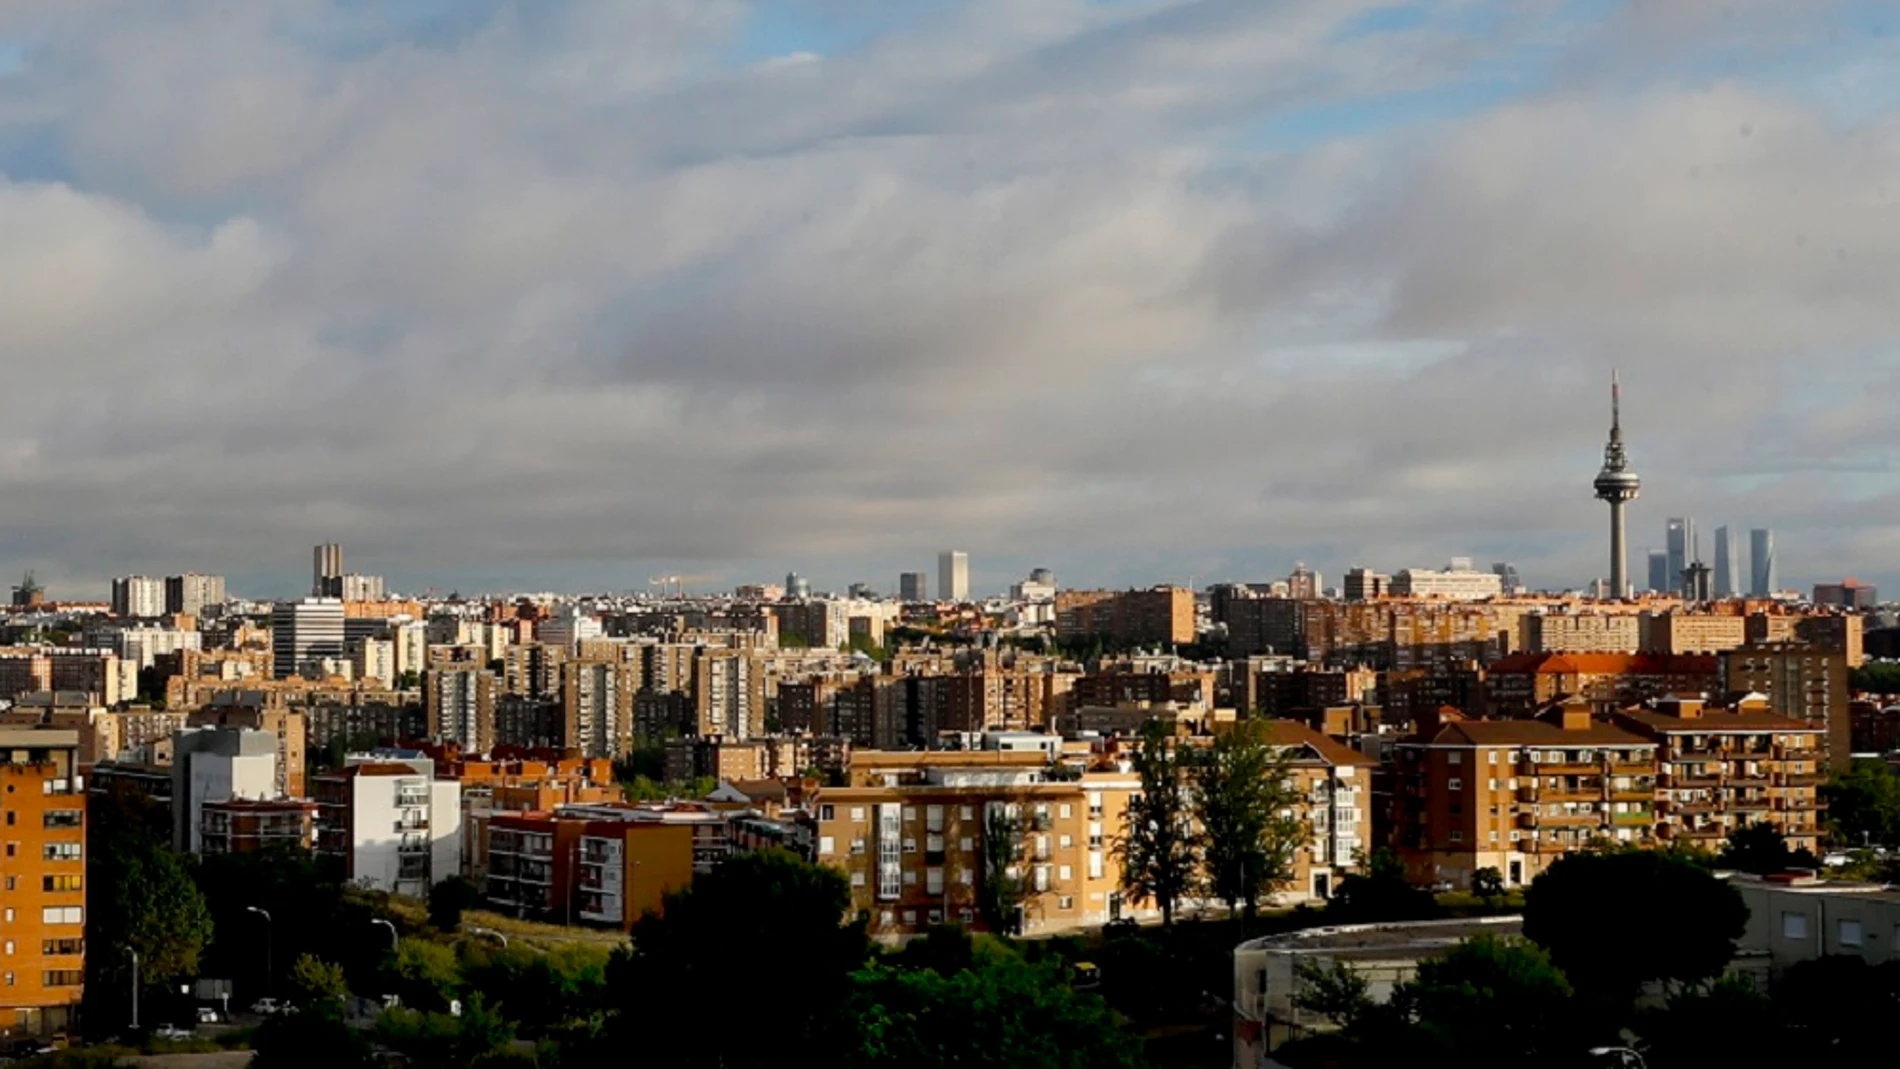 Vista del icónico Pirulí en Madrid